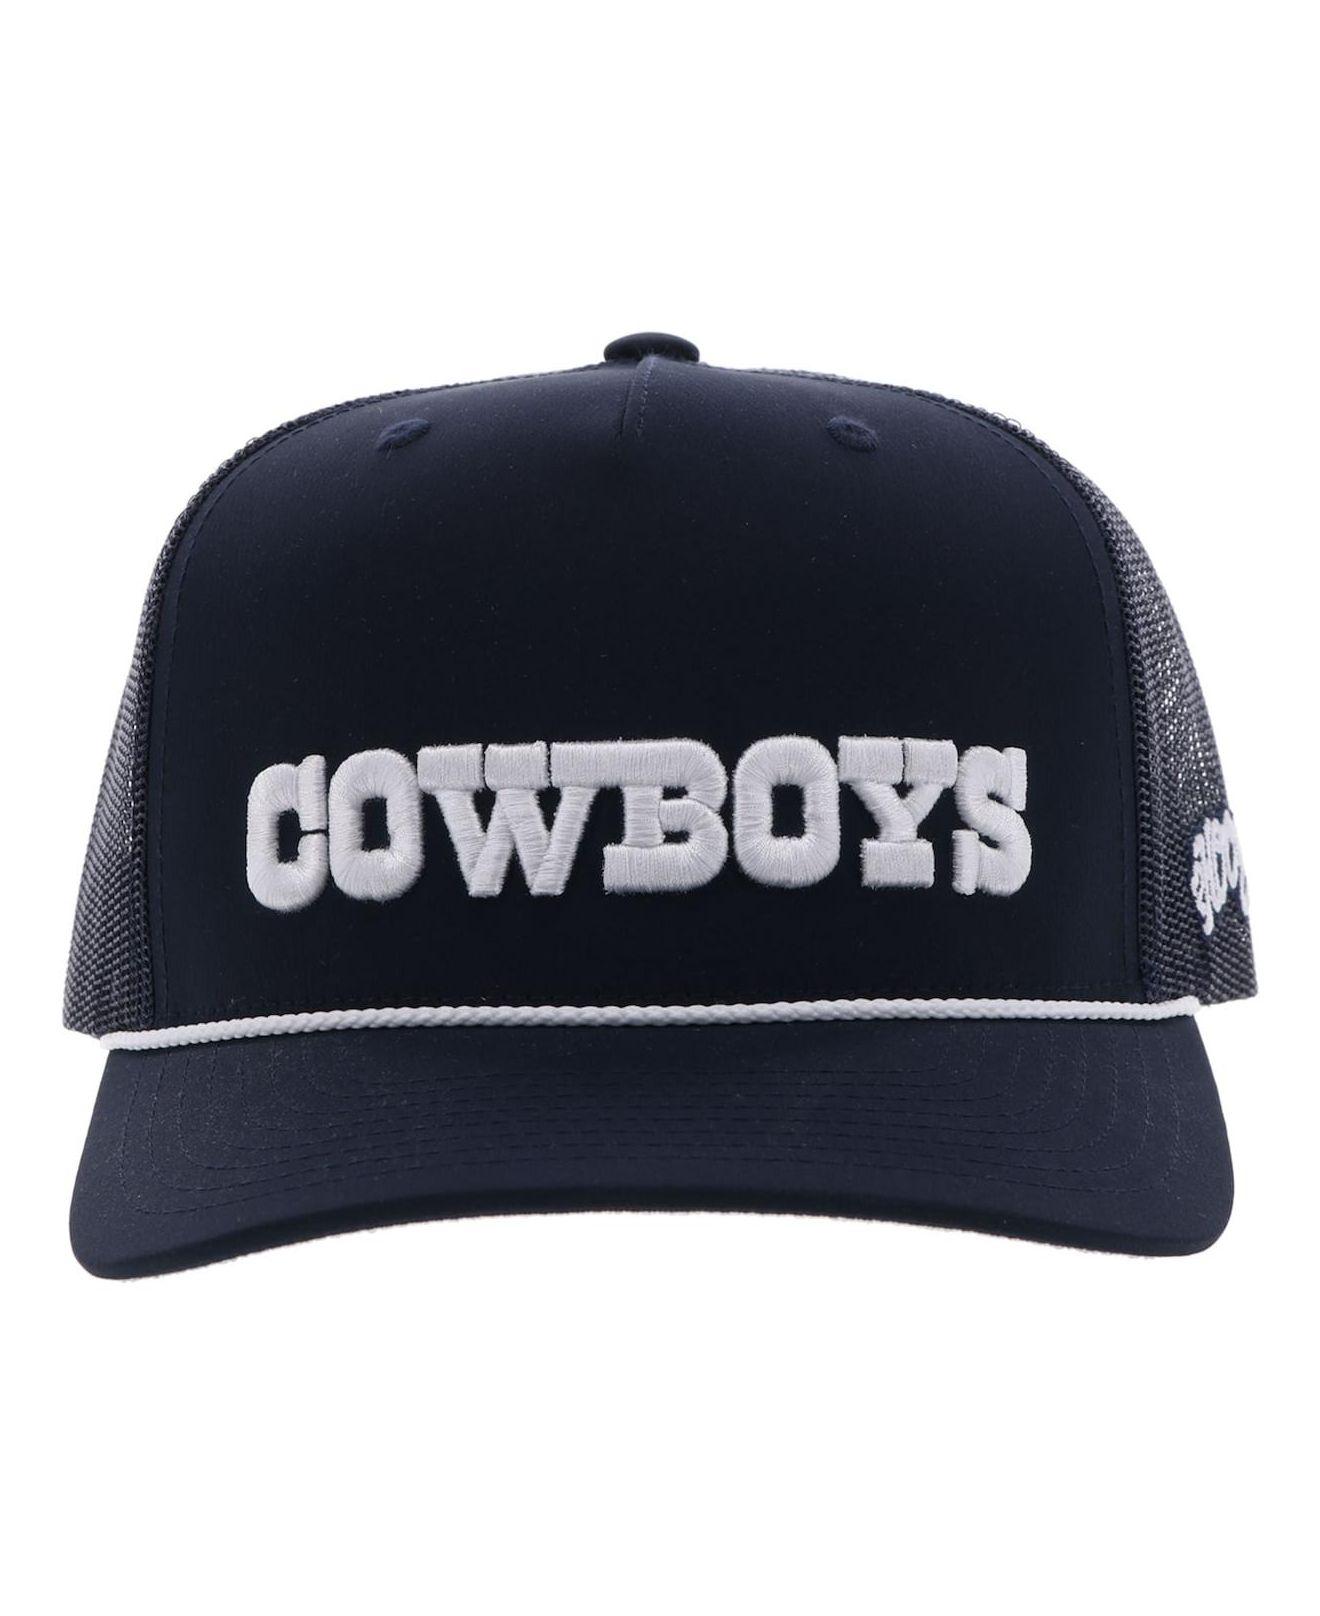 hooey dallas cowboys hat